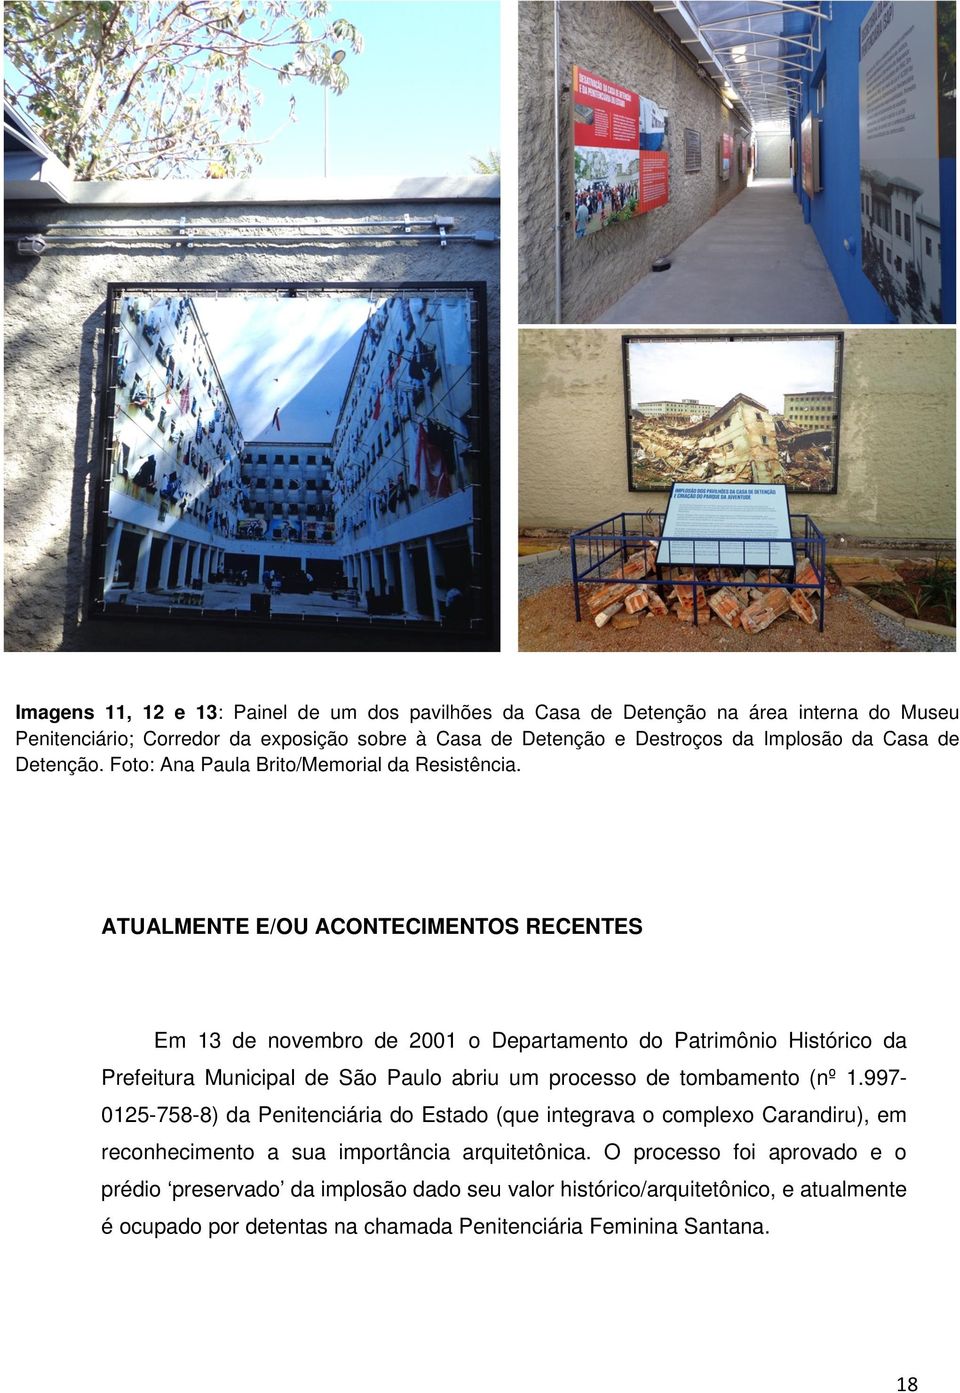 ATUALMENTE E/OU ACONTECIMENTOS RECENTES Em 13 de novembro de 2001 o Departamento do Patrimônio Histórico da Prefeitura Municipal de São Paulo abriu um processo de tombamento (nº 1.